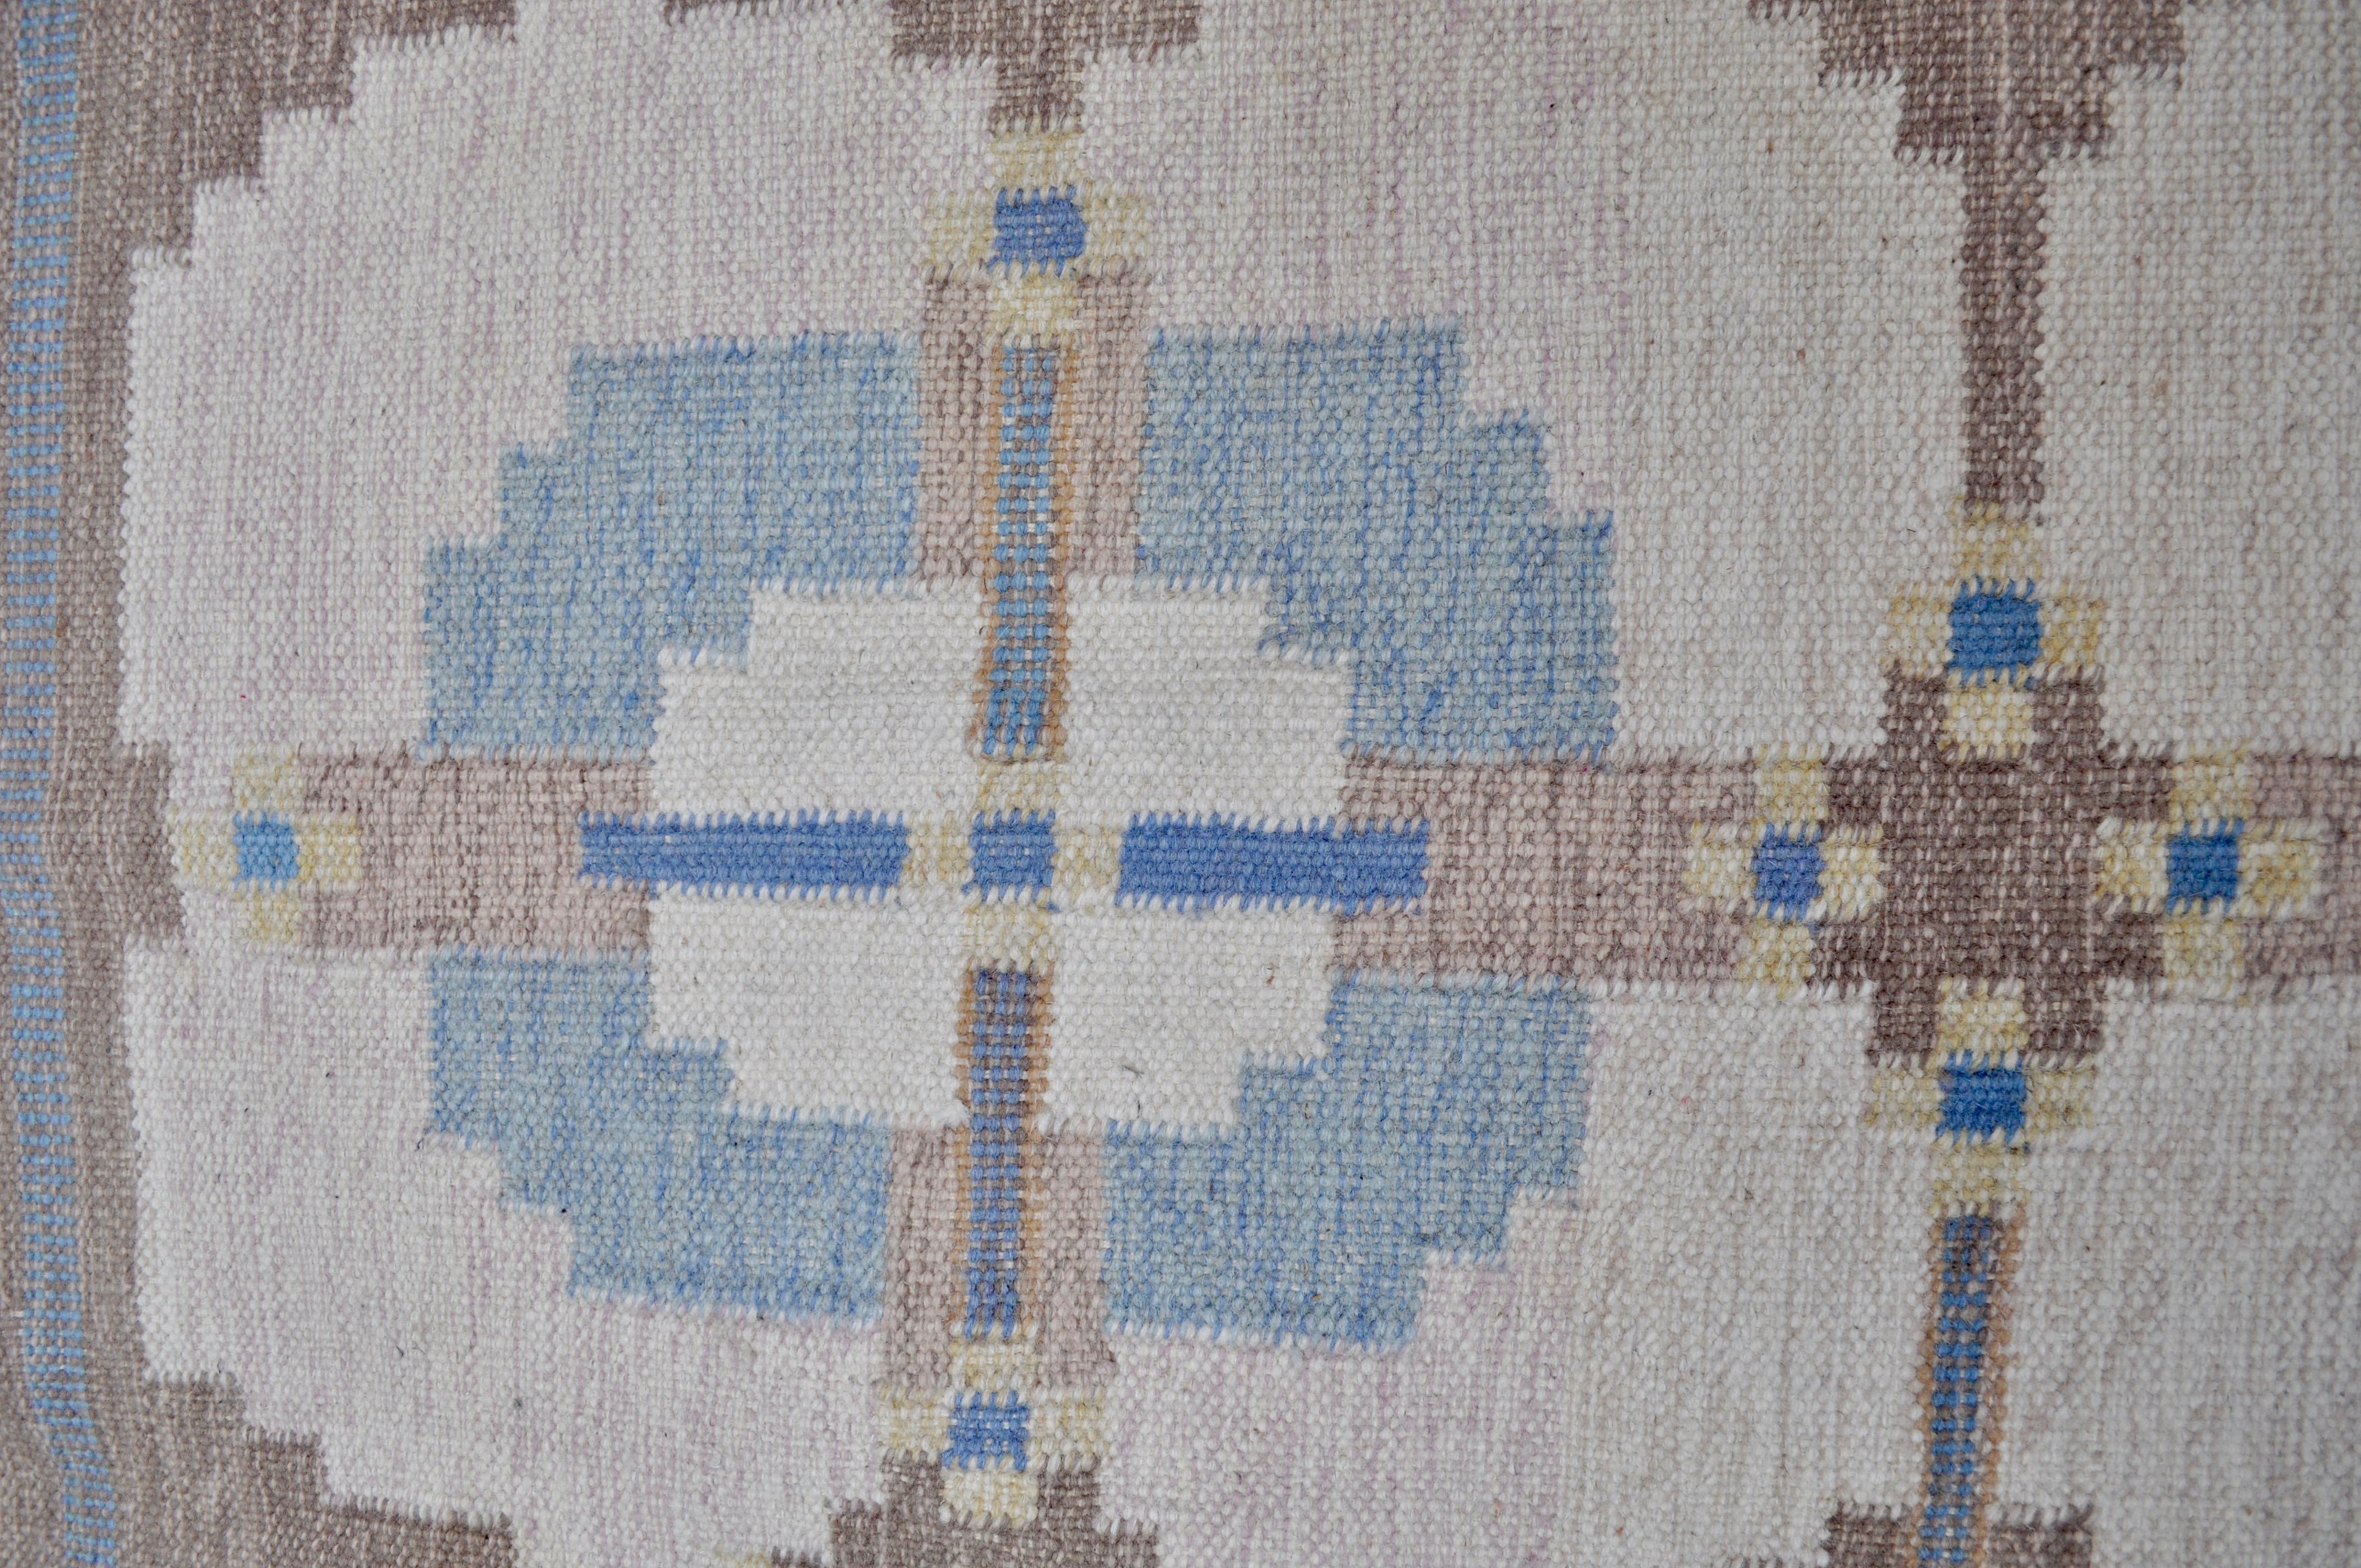 Tapis Rollakan en laine tissé main d'origine suédoise produit dans les années 60. Son motif géométrique reprend les formes traditionnels des rollakans suédois. Sa couleur apporte une touche de fraicheur dans votre intérieur. Tapis signé HLO.
 